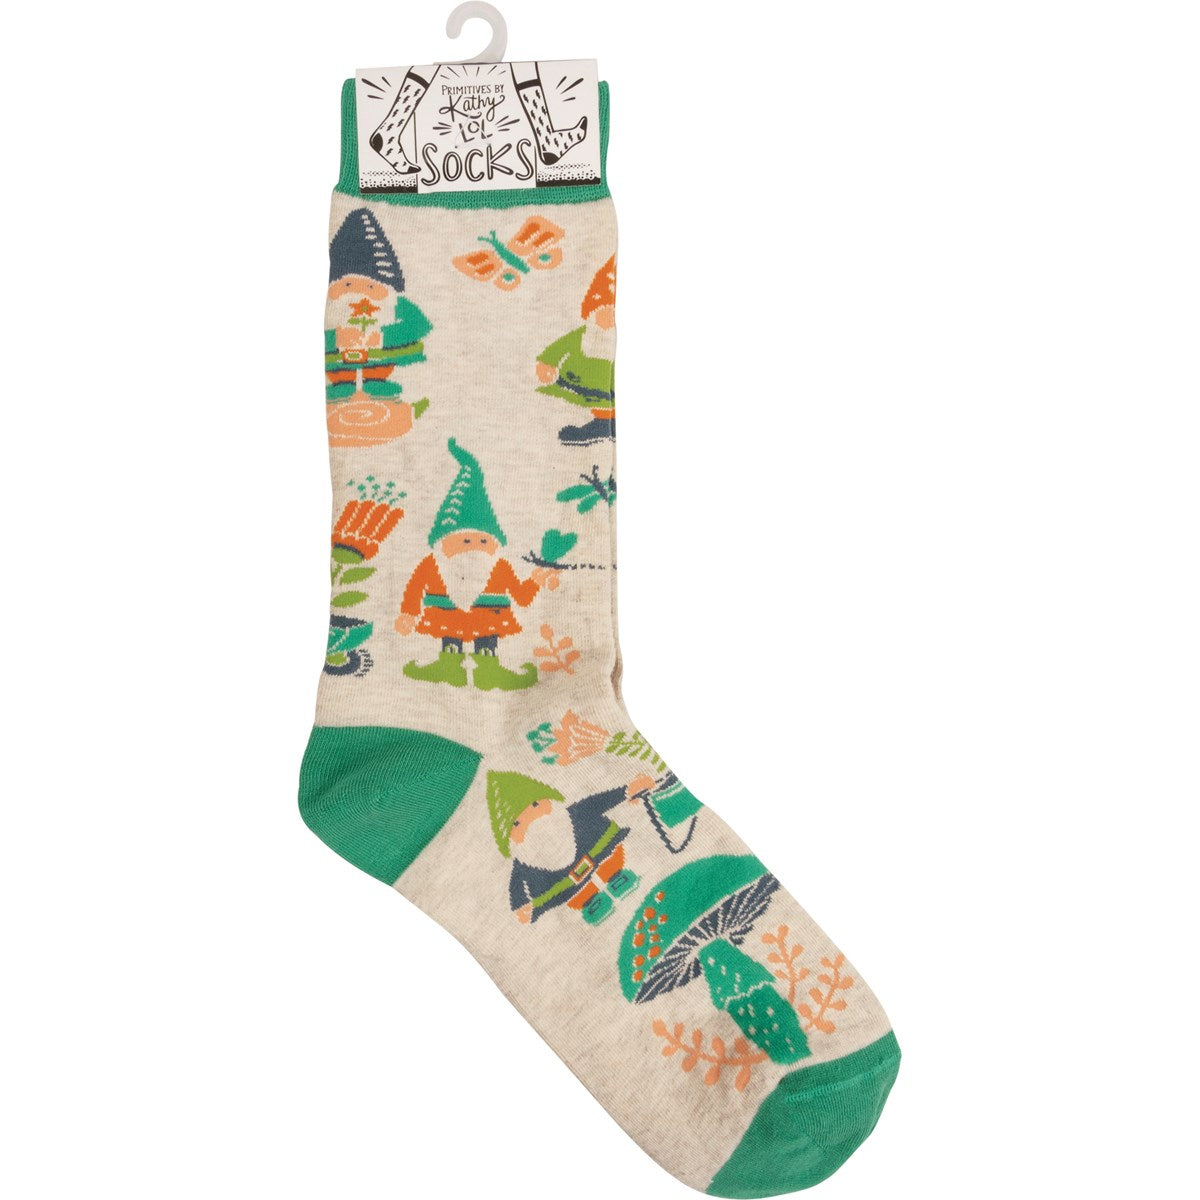 Garden gnome socks